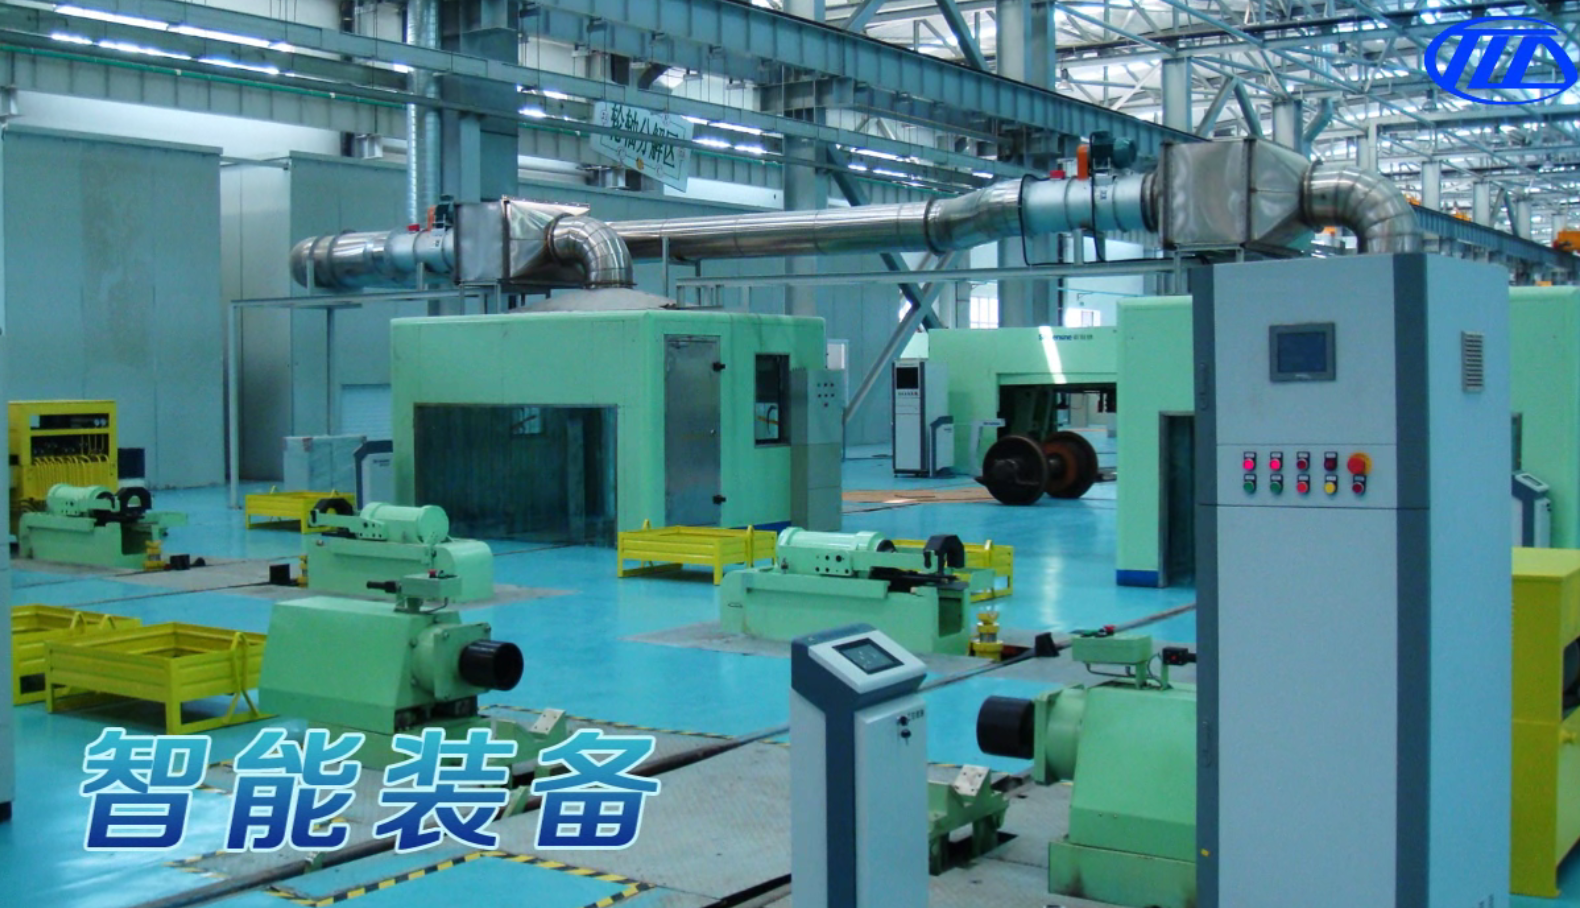 工业三维动画在机械制造领域的应用